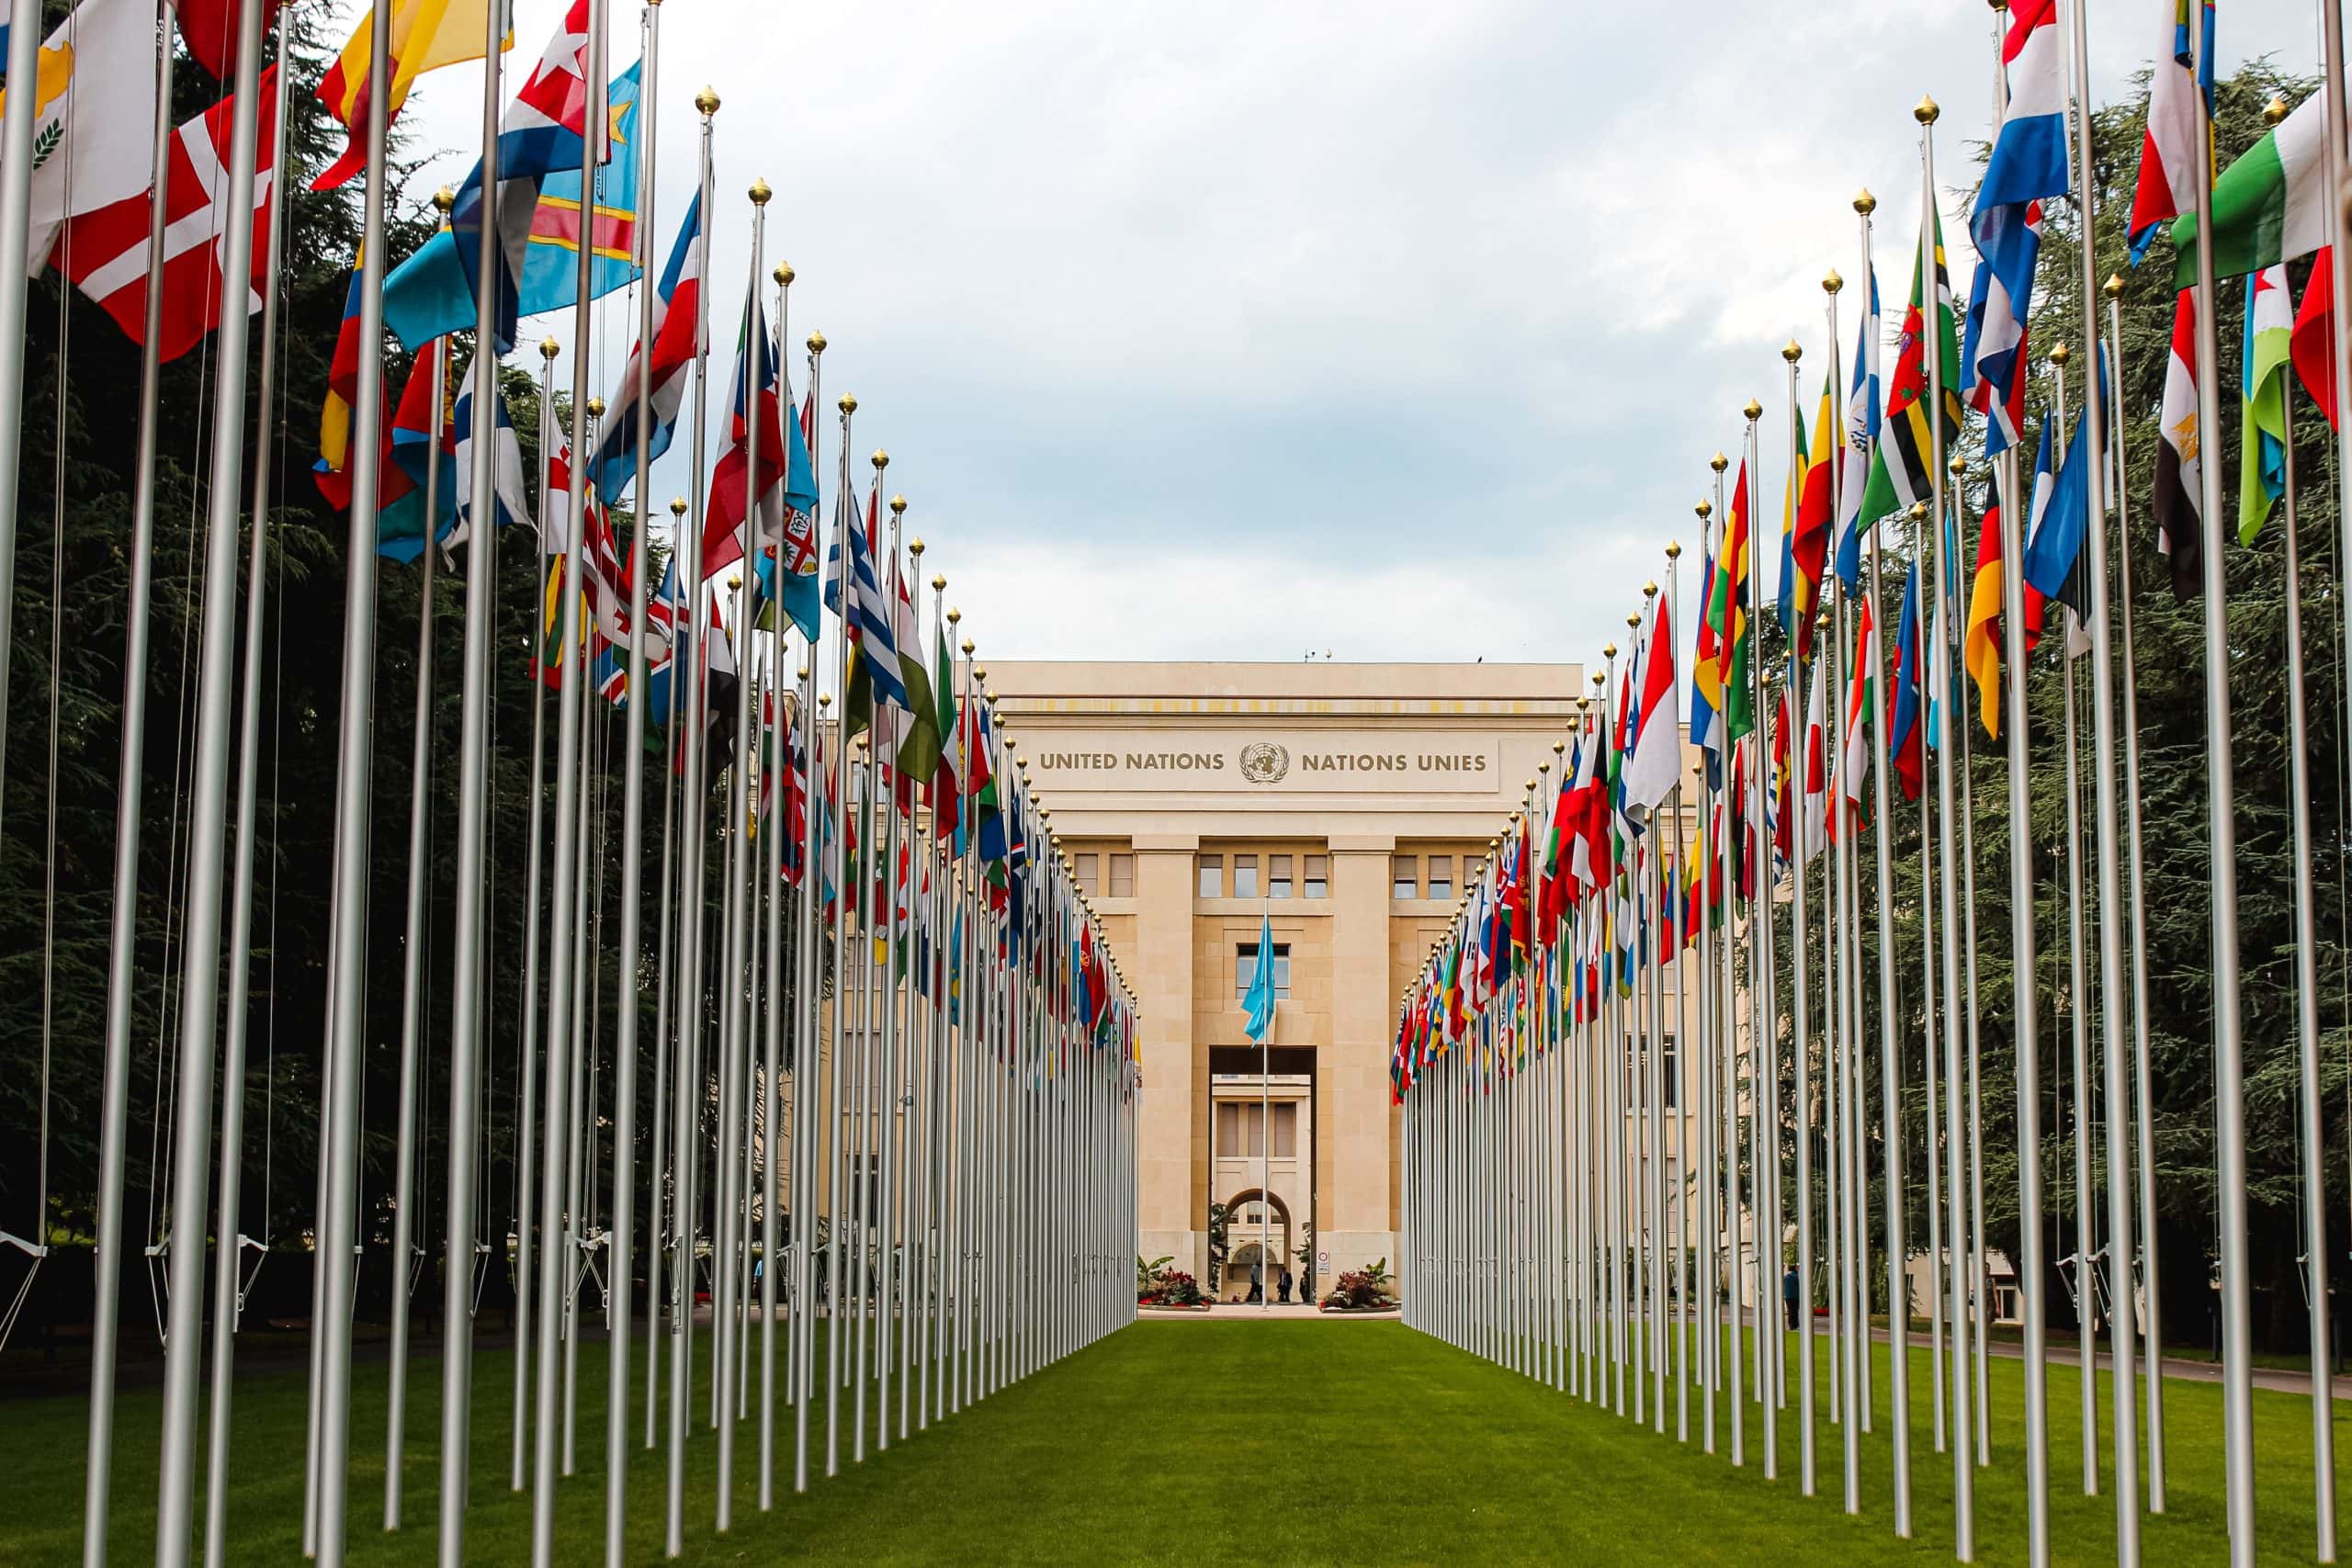 Birleşmiş Milletler yapısının üye ülkelerin bayraklarının göründüğü girişinin görseli.